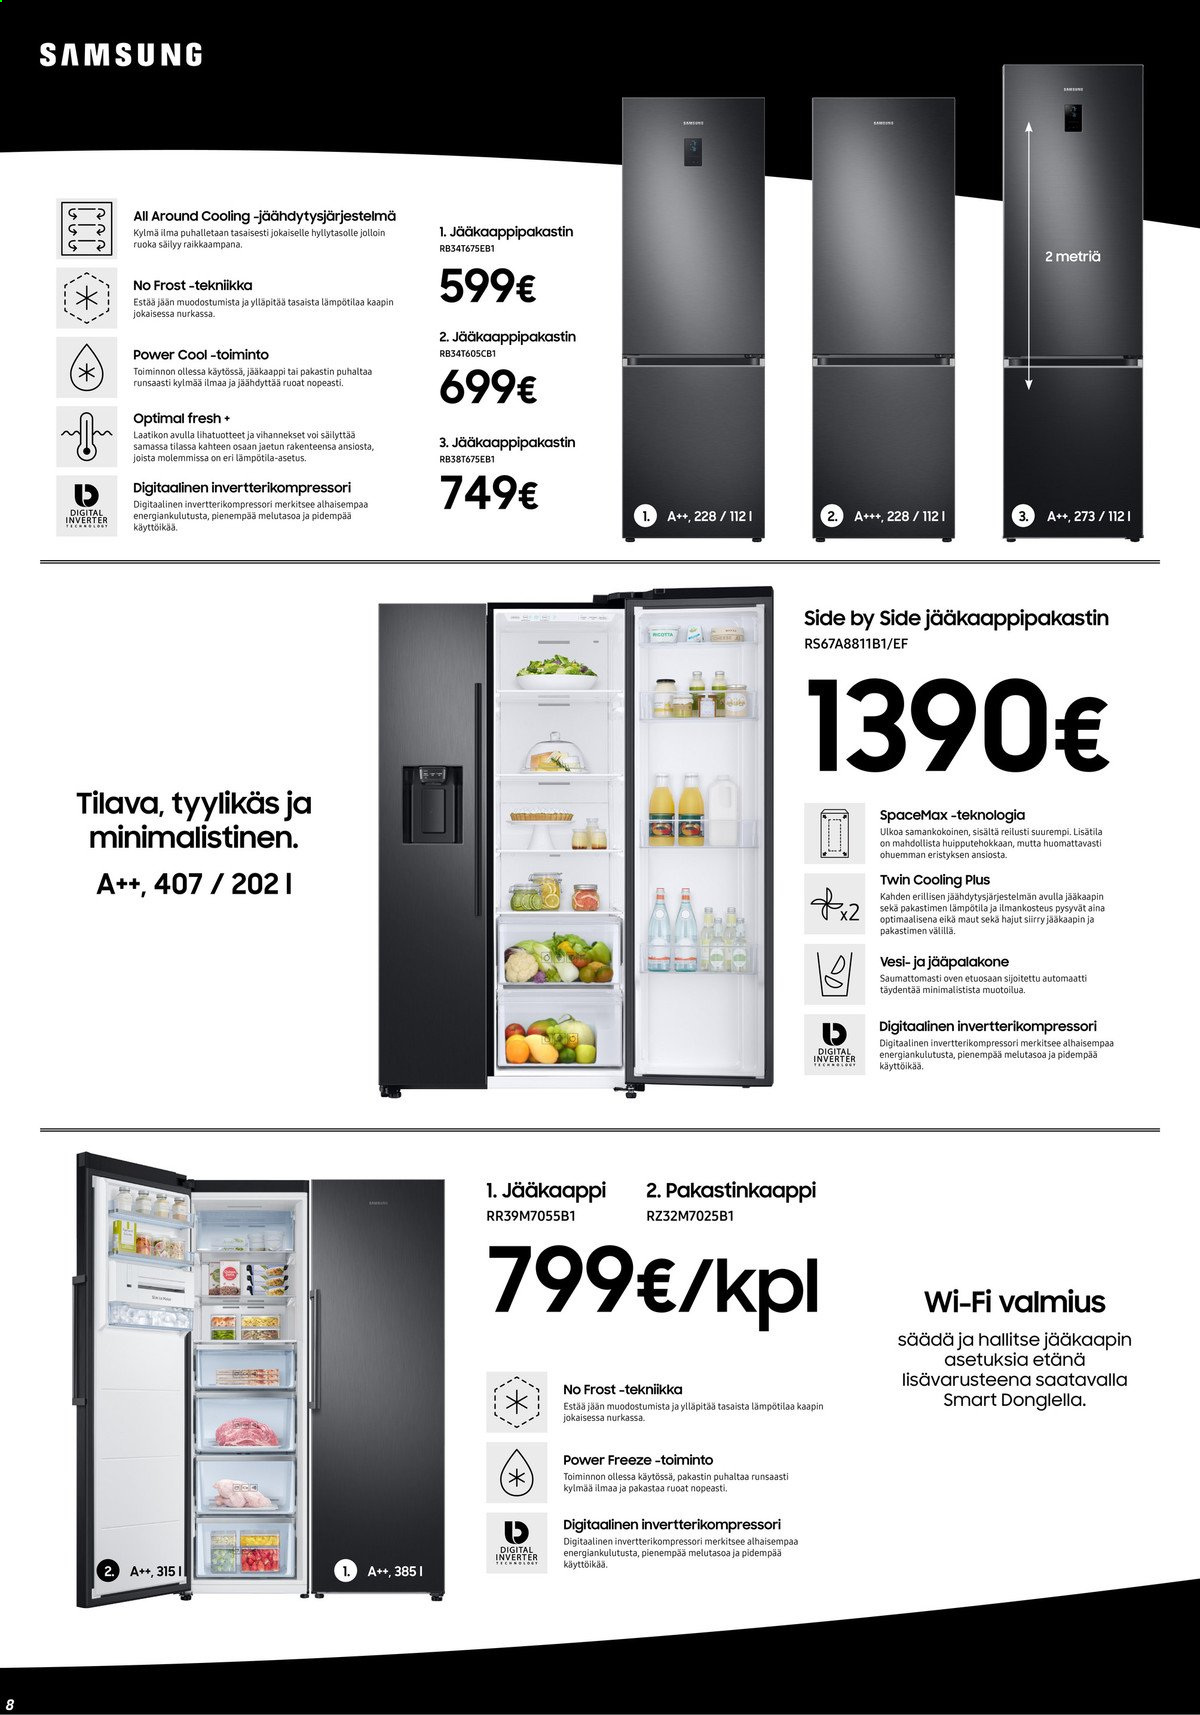 thumbnail - Veikon Kone tarjoukset  - 01.03.2021 - 07.03.2021 - Tarjoustuotteet - Samsung, jääkaappi, jääkaappipakastin. Sivu 8.